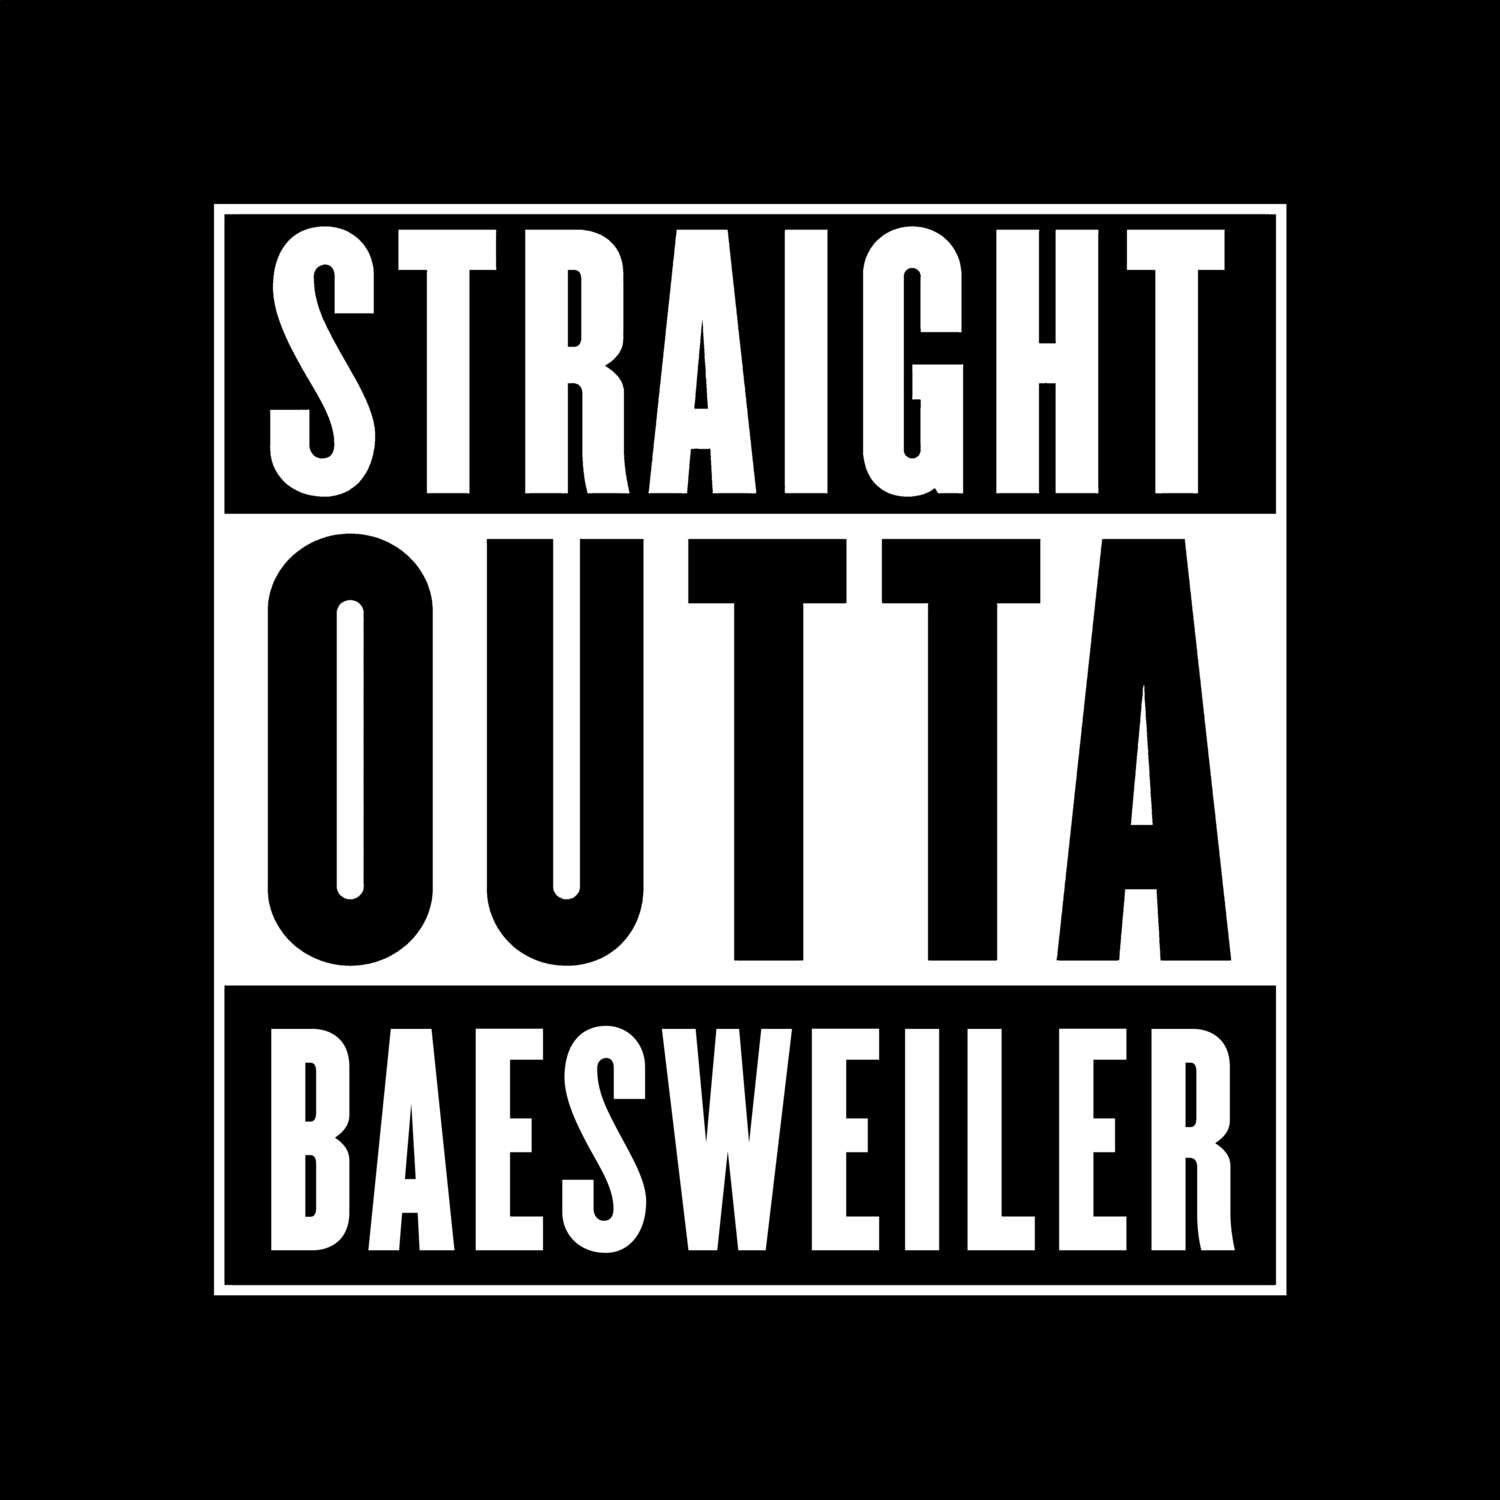 Baesweiler T-Shirt »Straight Outta«